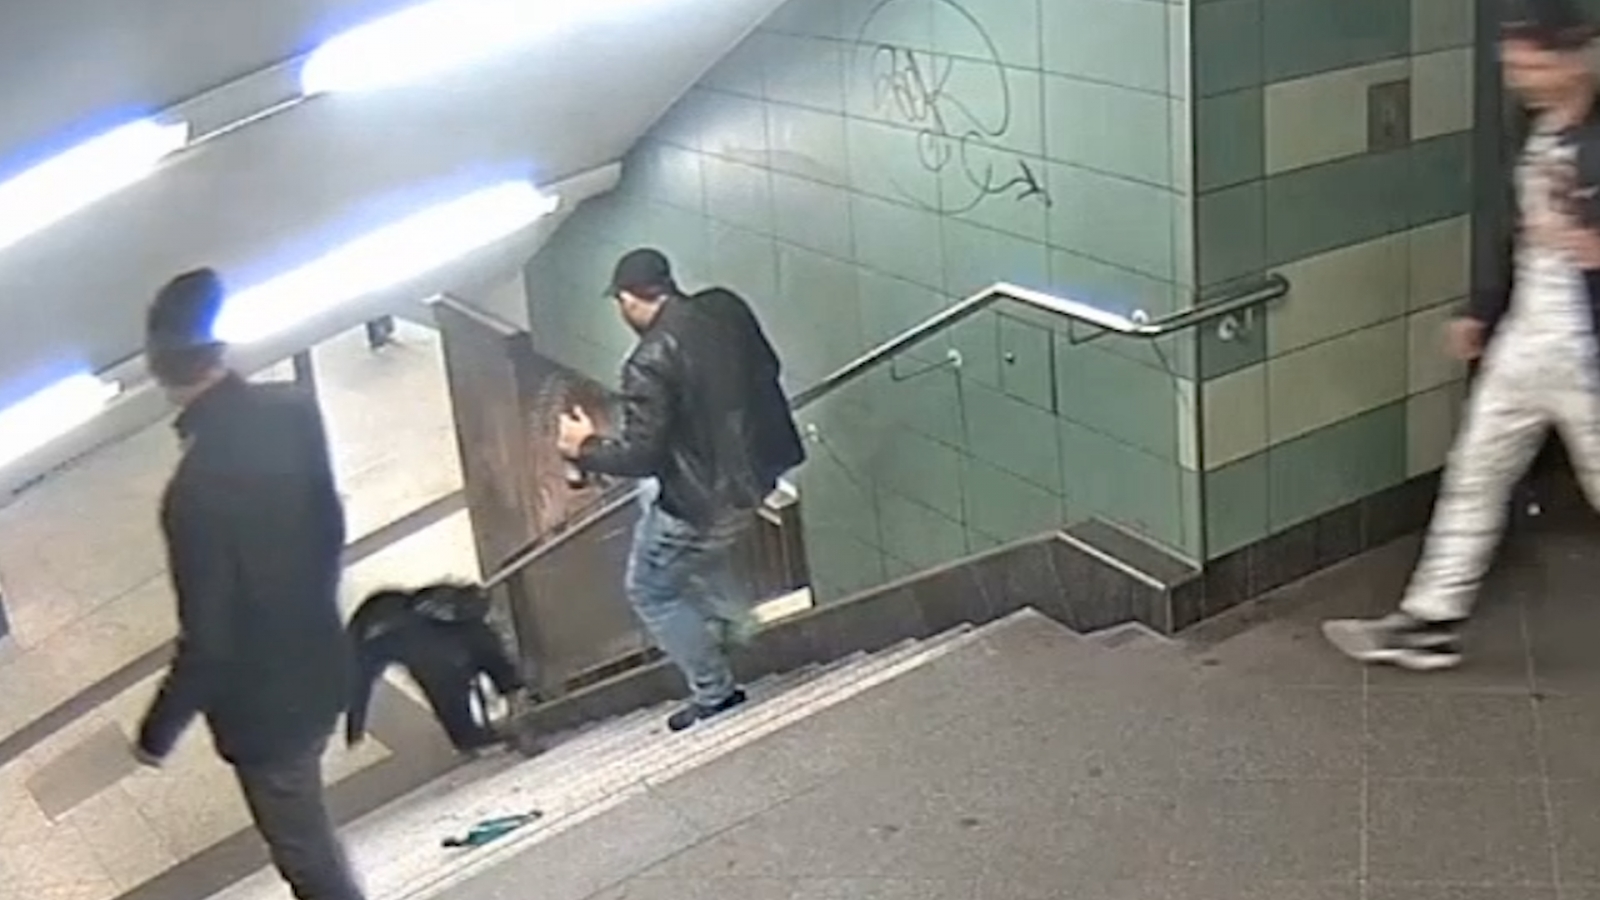 Видное нападение. Камеры в метро. Мужчина толкнул женщину в метро. Опасные ситуации в метро.